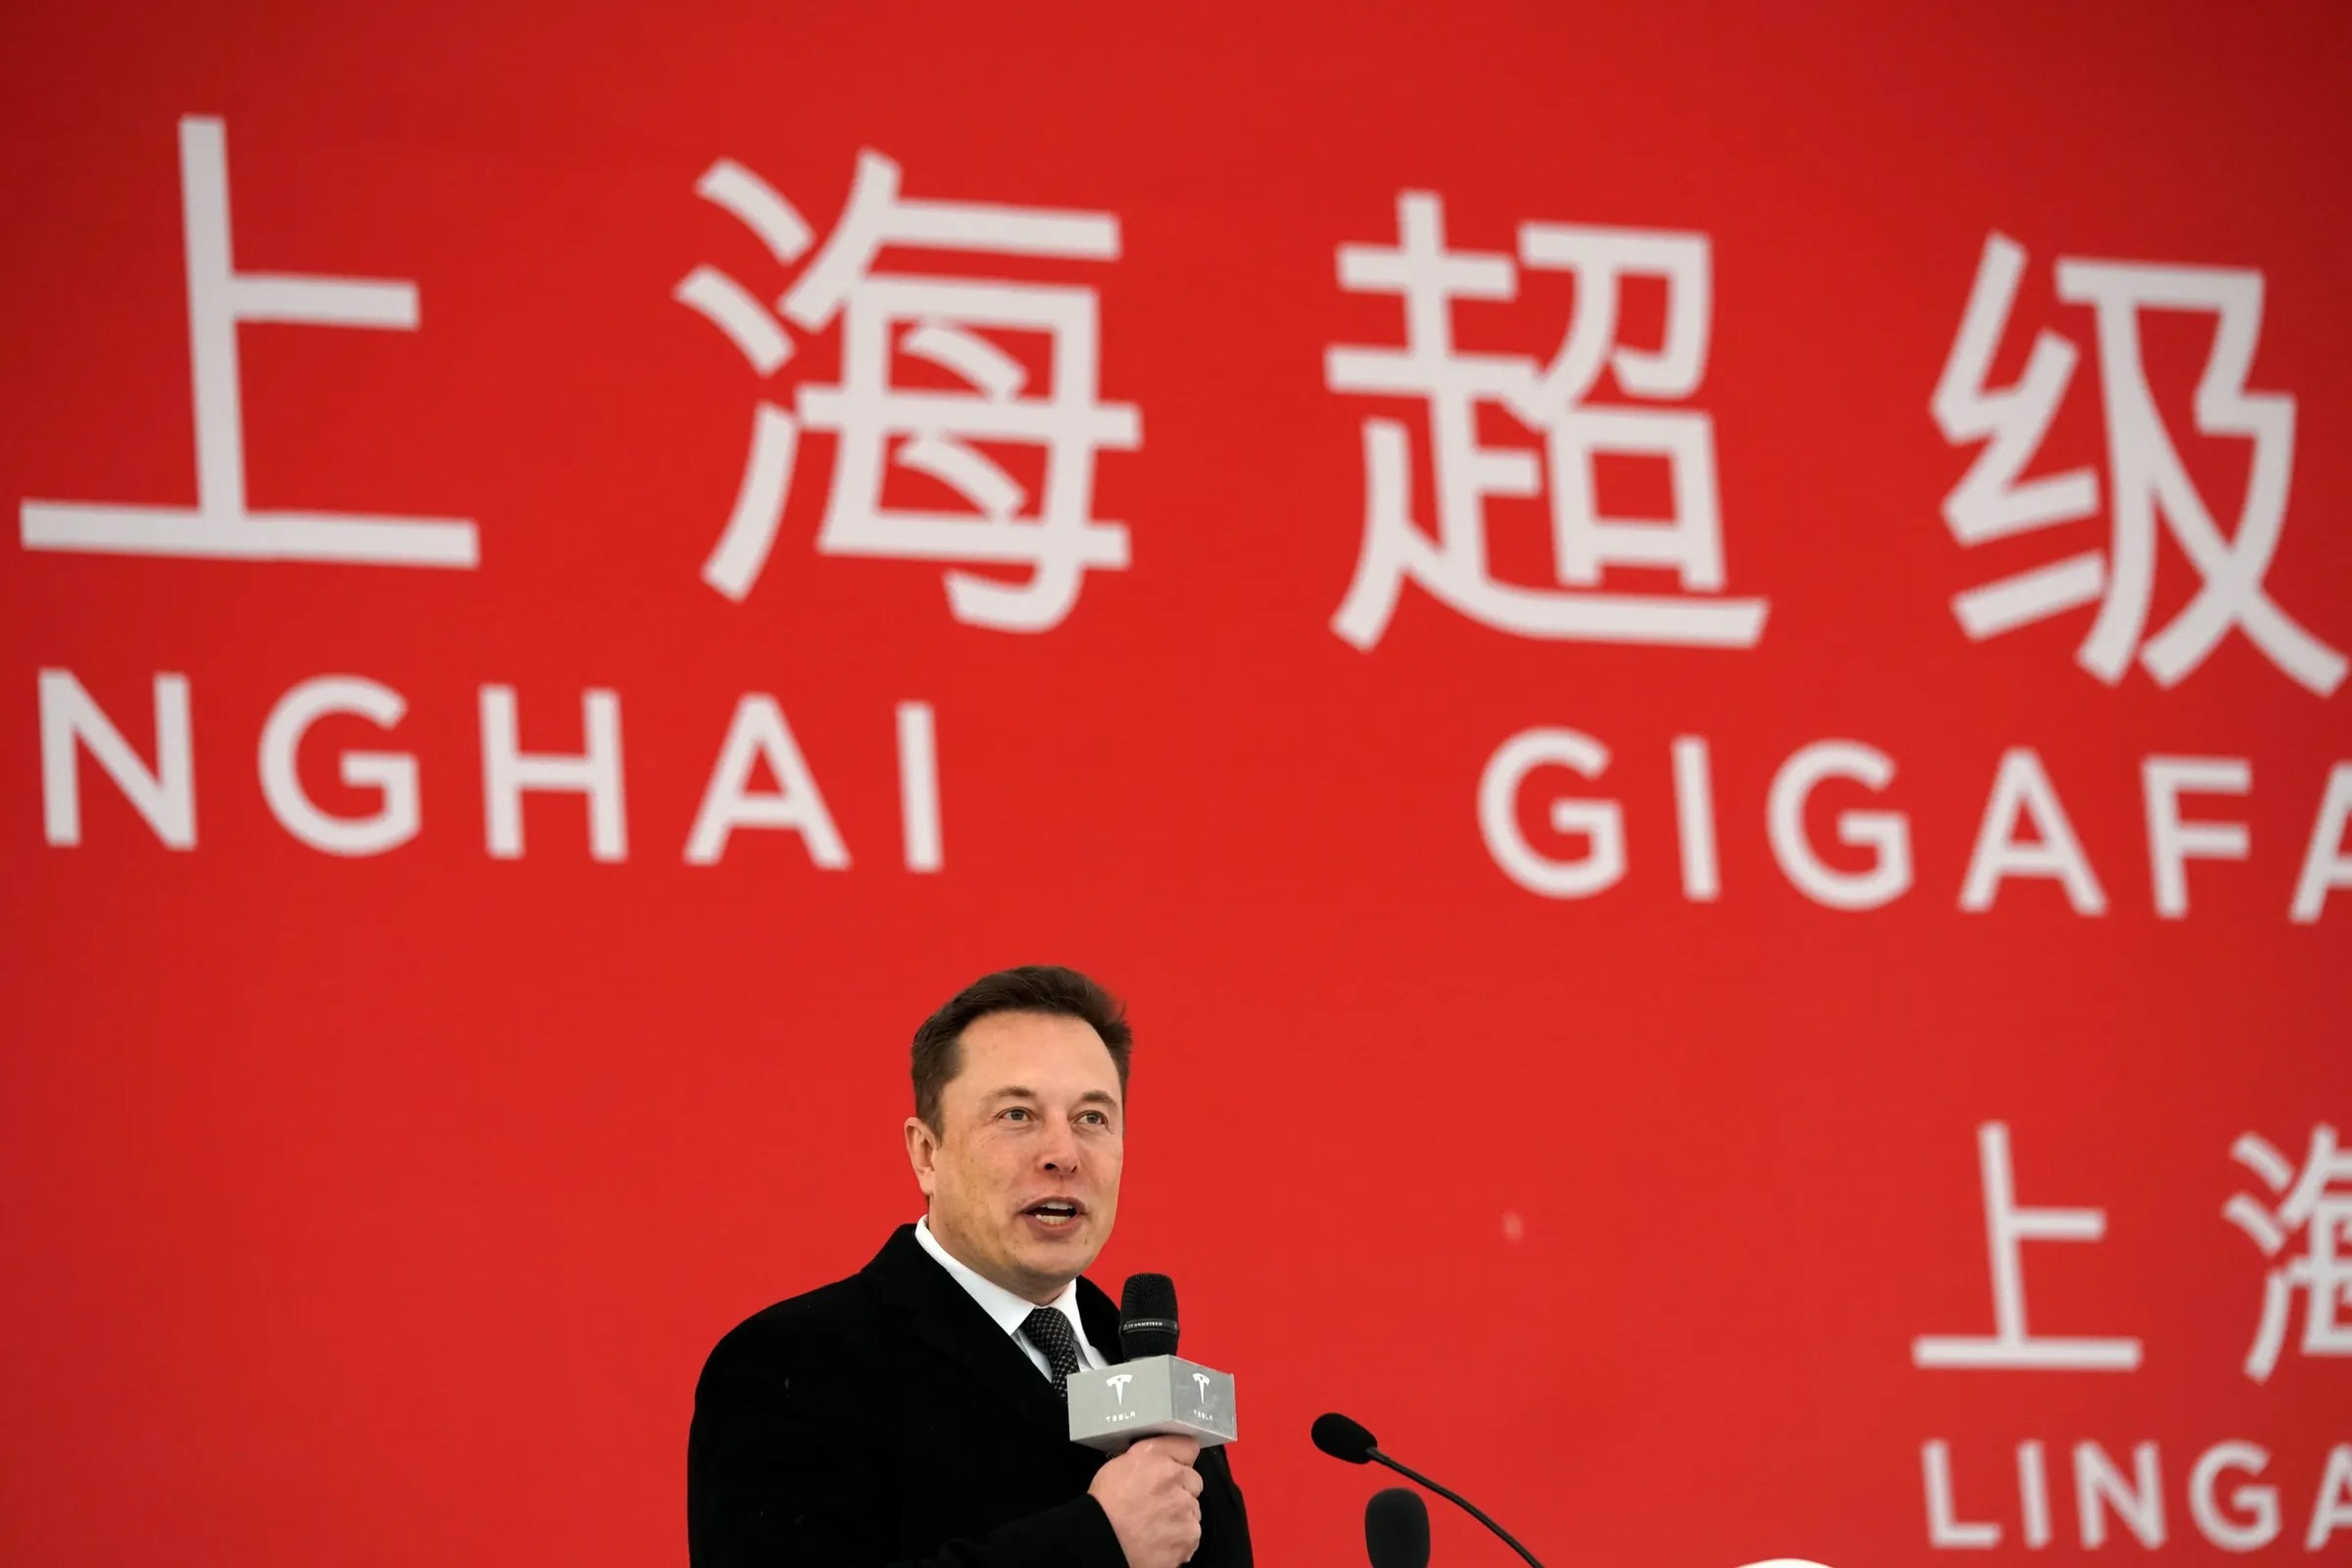 El CEO de Tesla, Elon Musk, asiste a la ceremonia de colocación de la primera piedra de la Gigafábrica de Tesla en Shanghái, China, el 7 de enero de 2019, sosteniendo un micrófono frente a una gran pancarta roja.